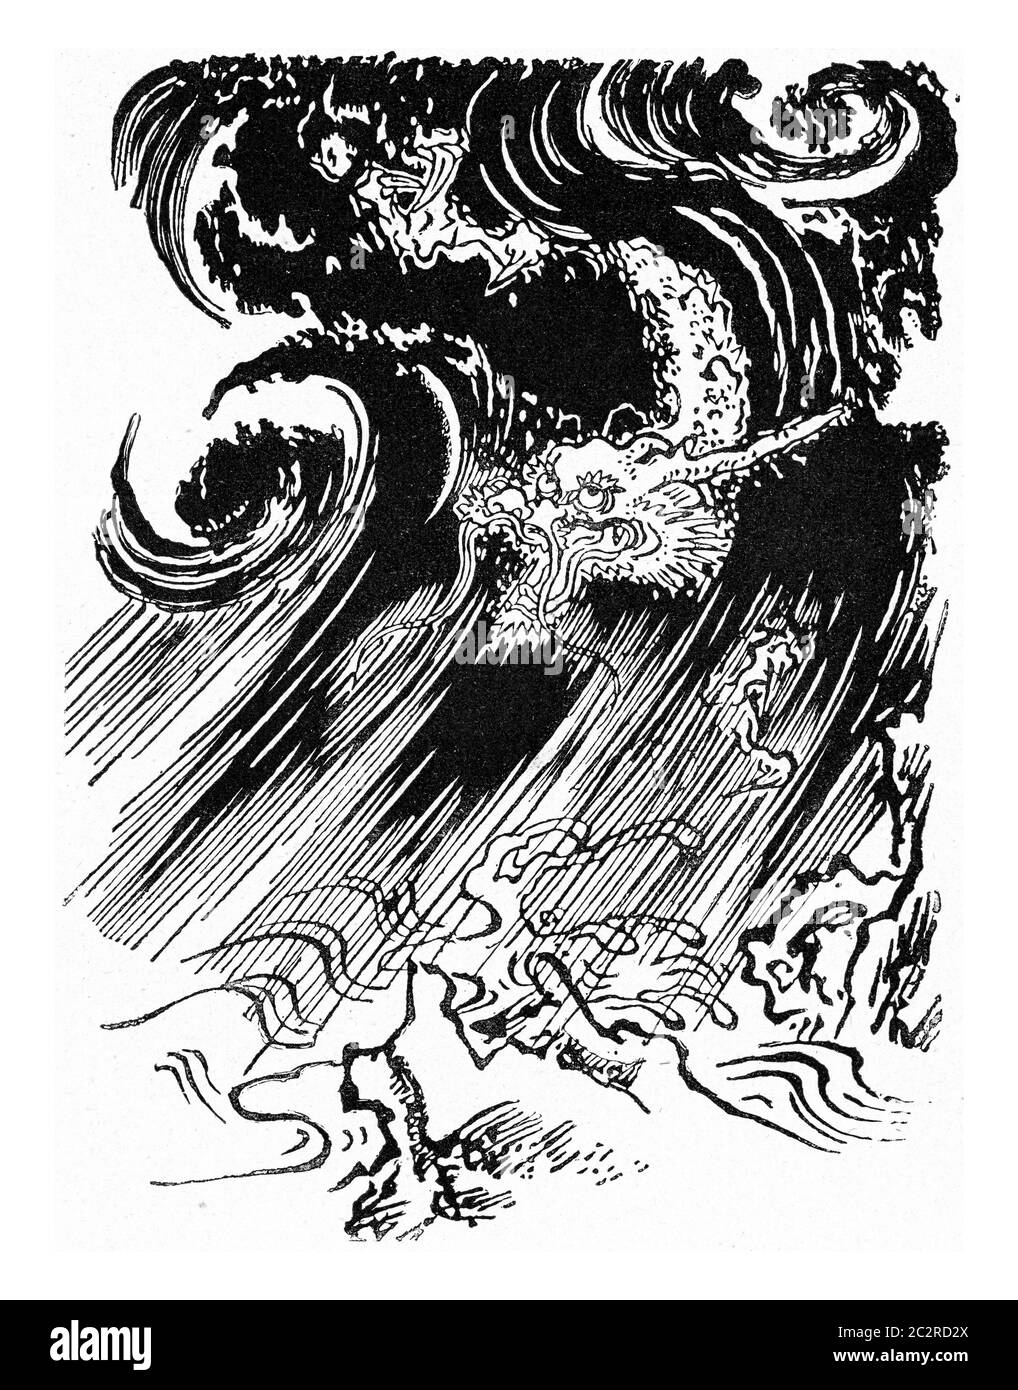 Le dragon de la tempête, illustration gravée d'époque. De l'Univers et de l'humanité, 1910. Banque D'Images